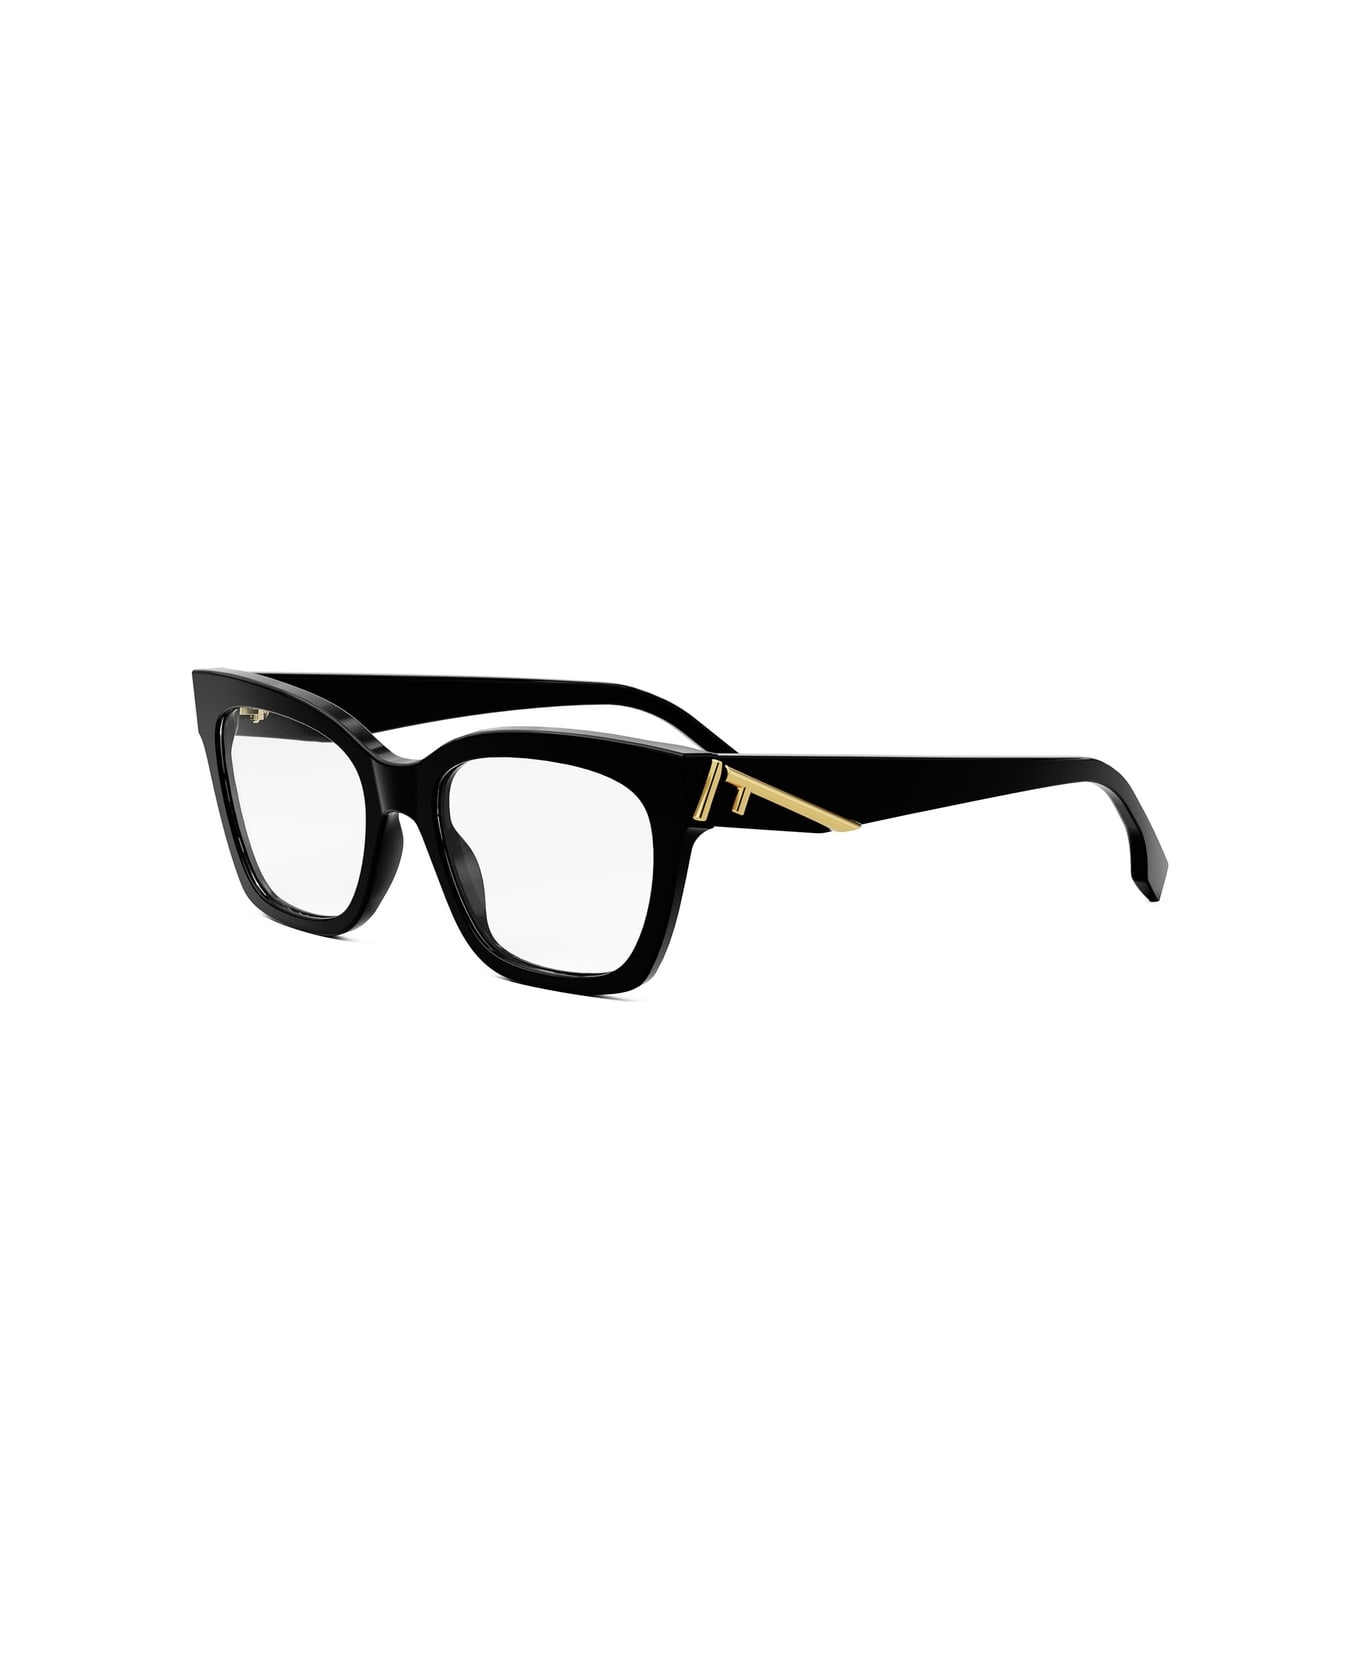 Fendi Eyewear Fe50073i 001 Glasses - Nero アイウェア